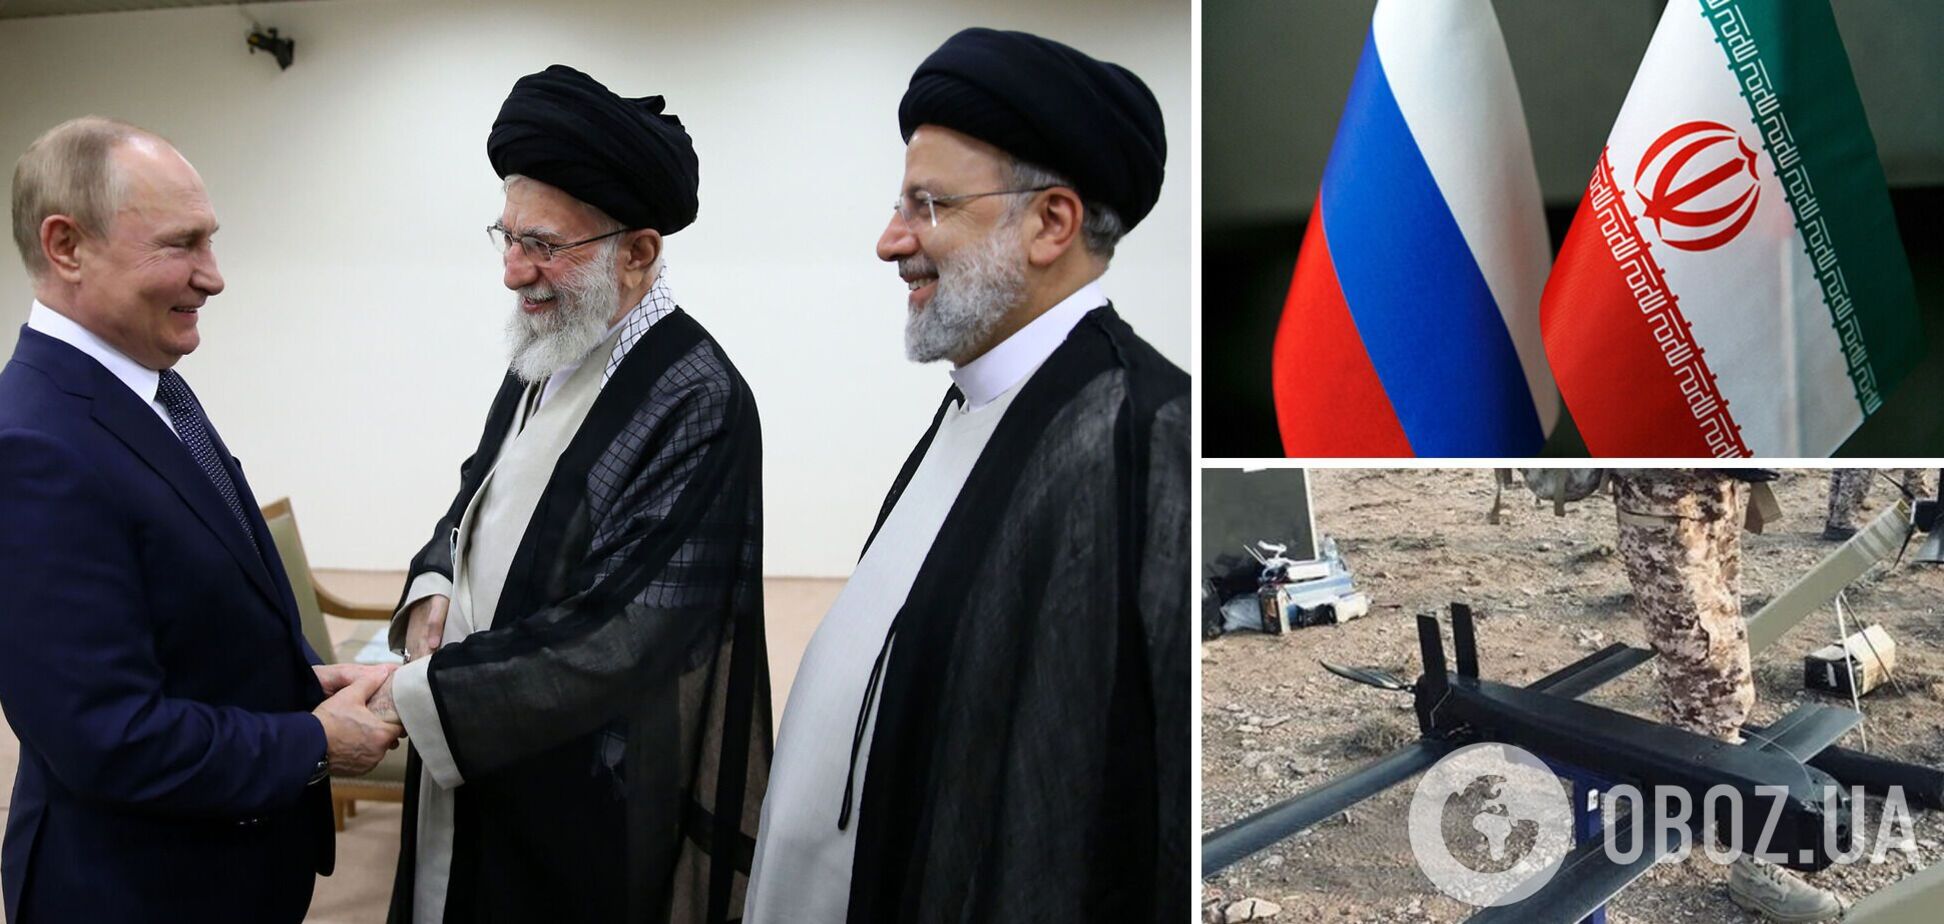 Словацкие компании после вторжения РФ в Украину поставляли России и Ирану детали для изготовления оружия – СМИ